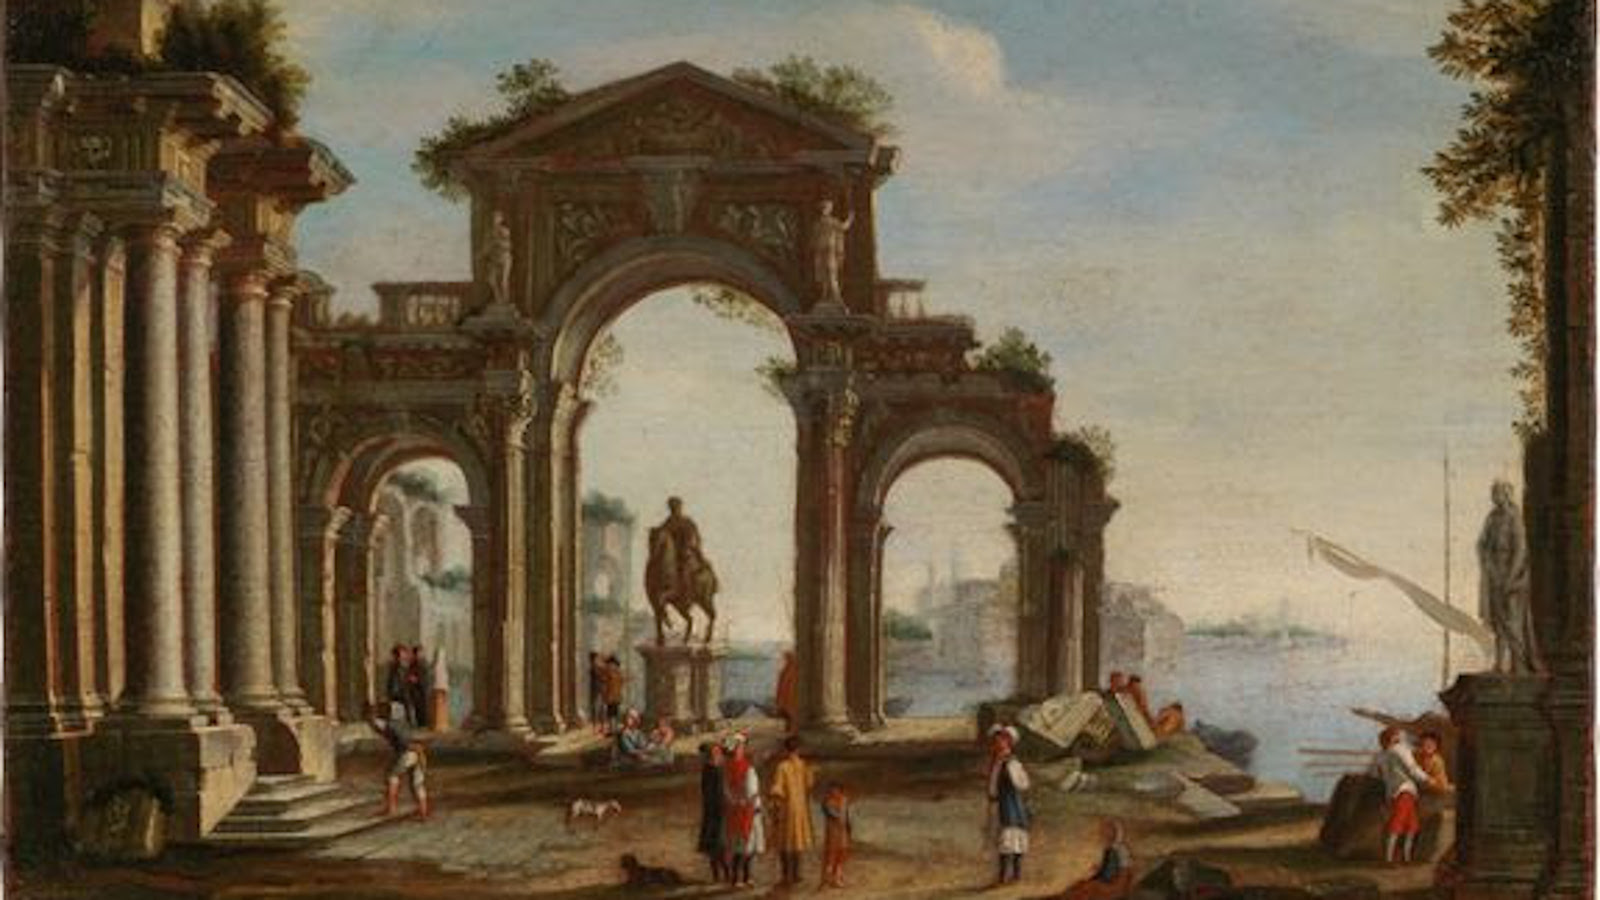 Kuvassa on kolmiosainen portti ja vasemmalla vieressä on pylväikkö sekä palmuja. Taustalla on poutapilviä ja kauempana kaupunkia.